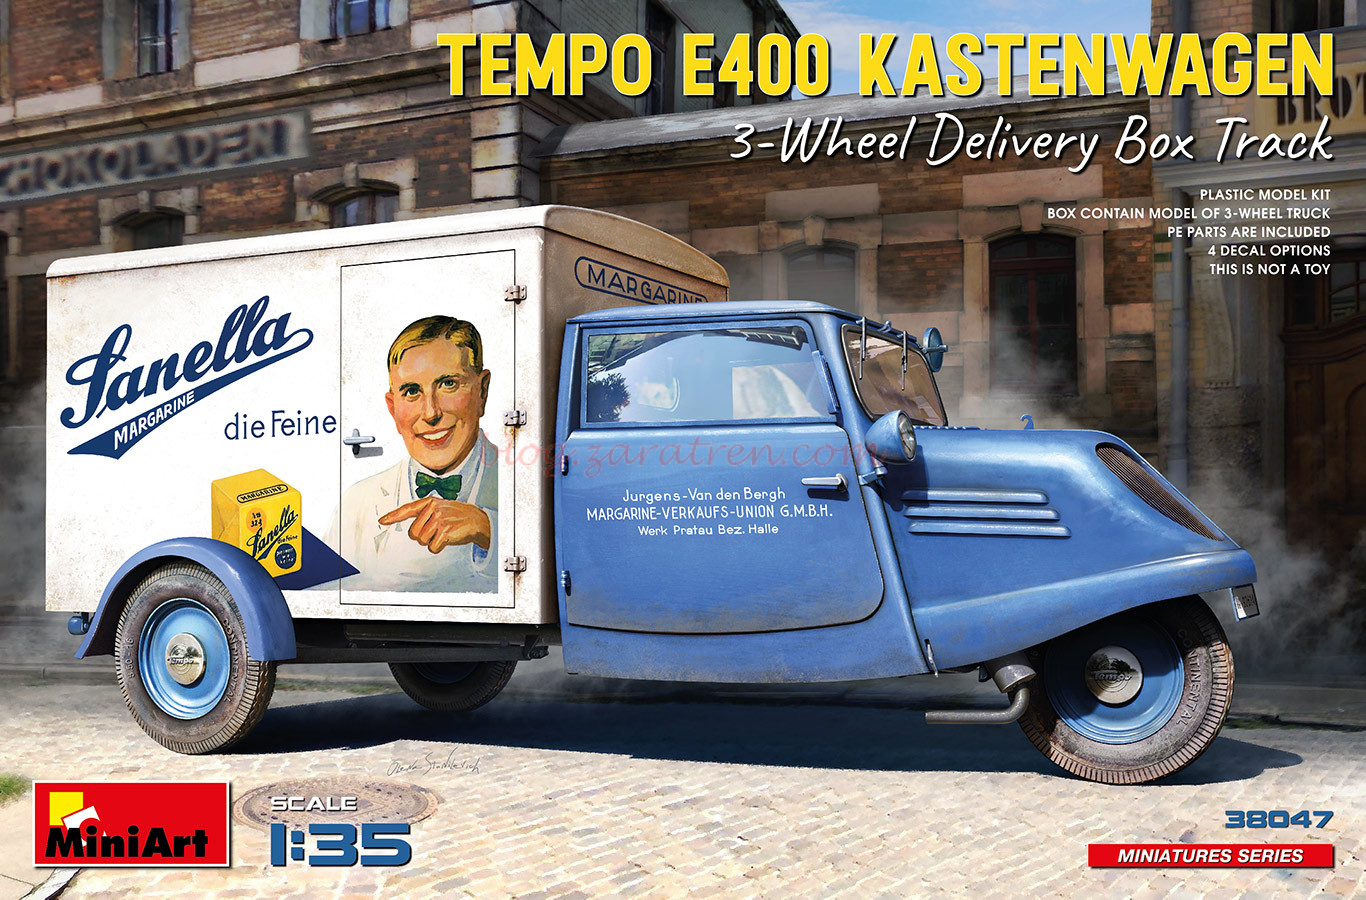 Miniart – Vehículo Tempo E400 Kastenwagen, Escala 1:35, Ref: 38047